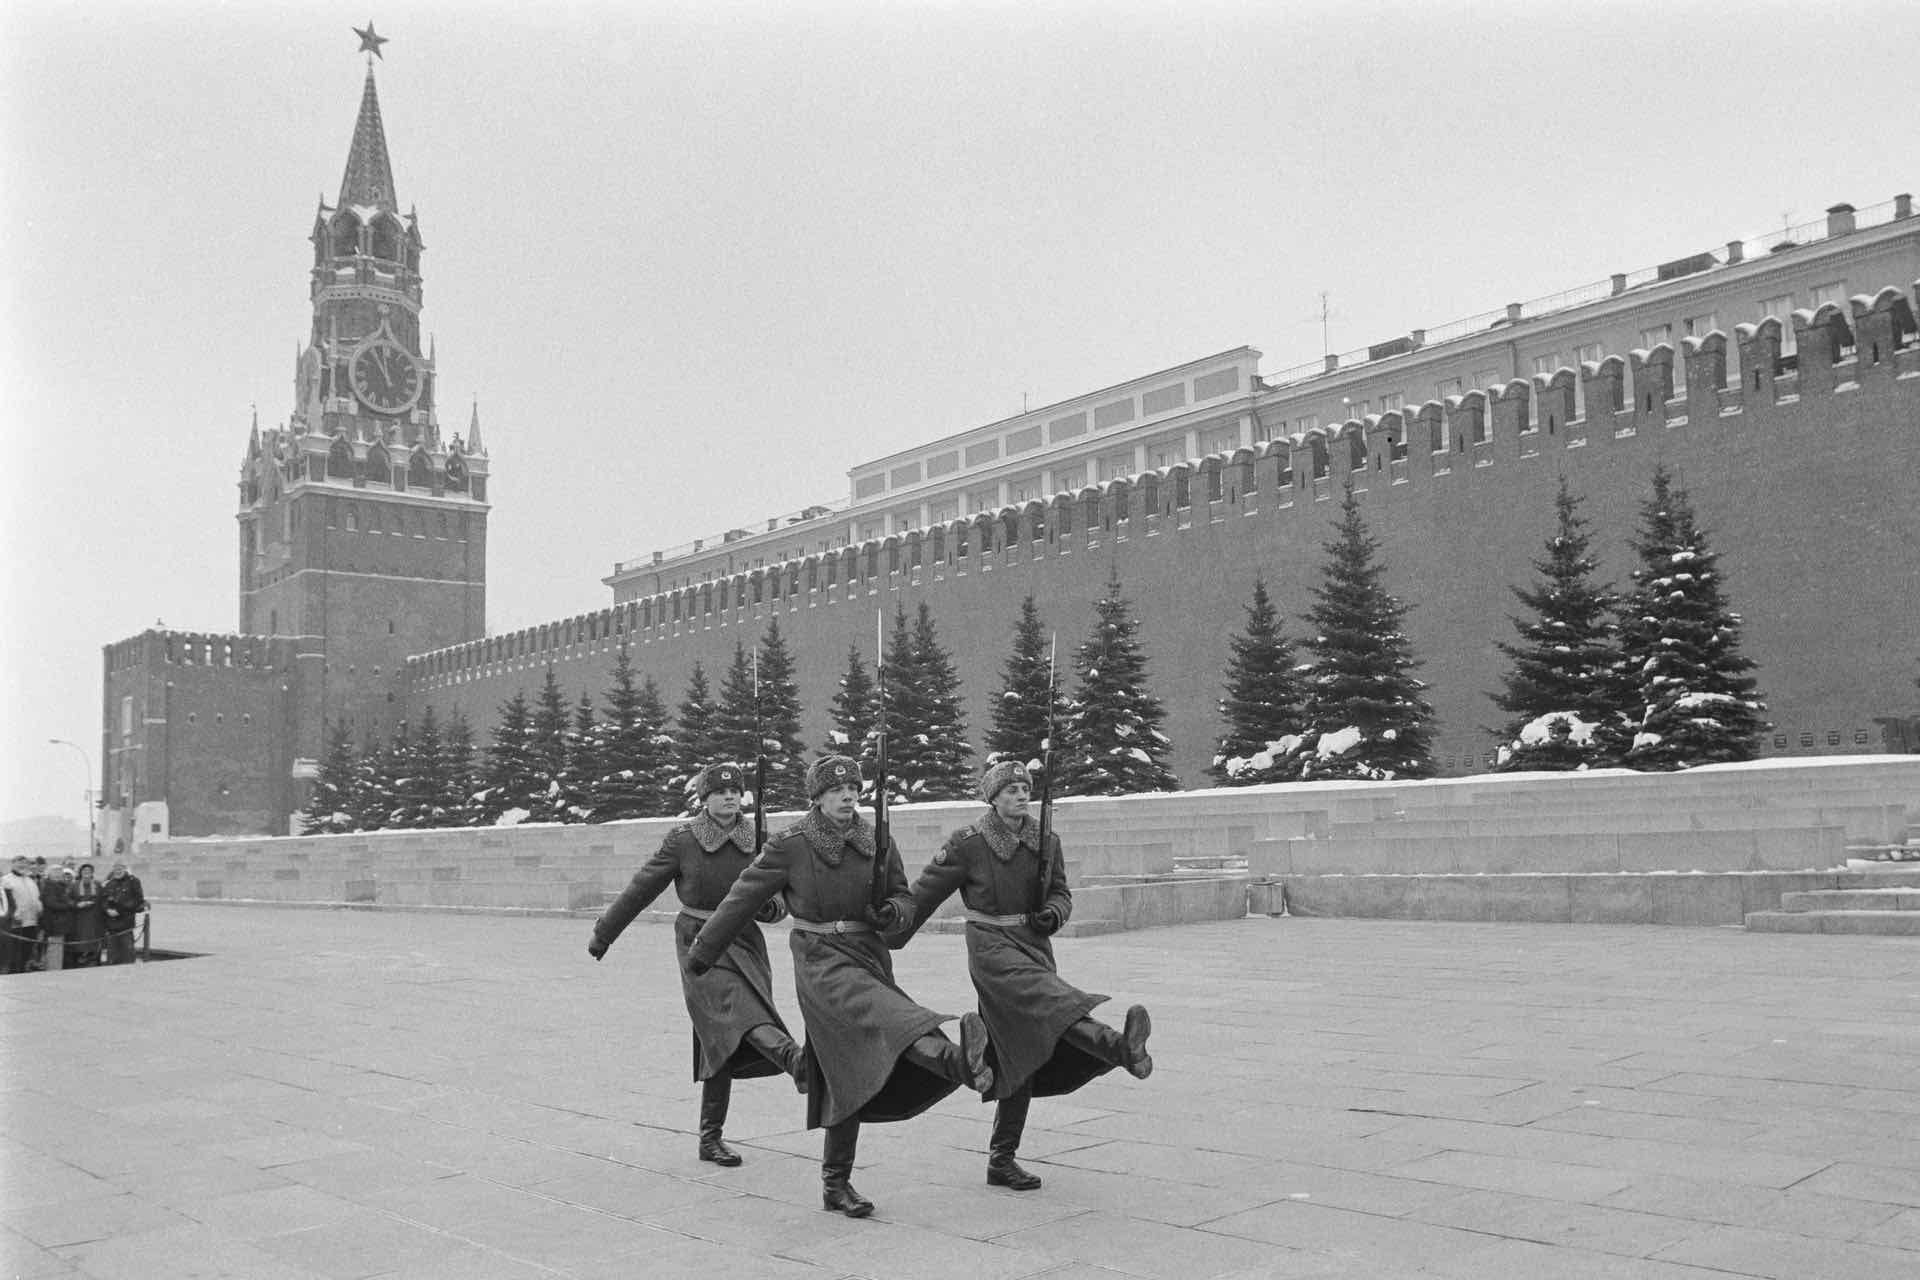 kremlin